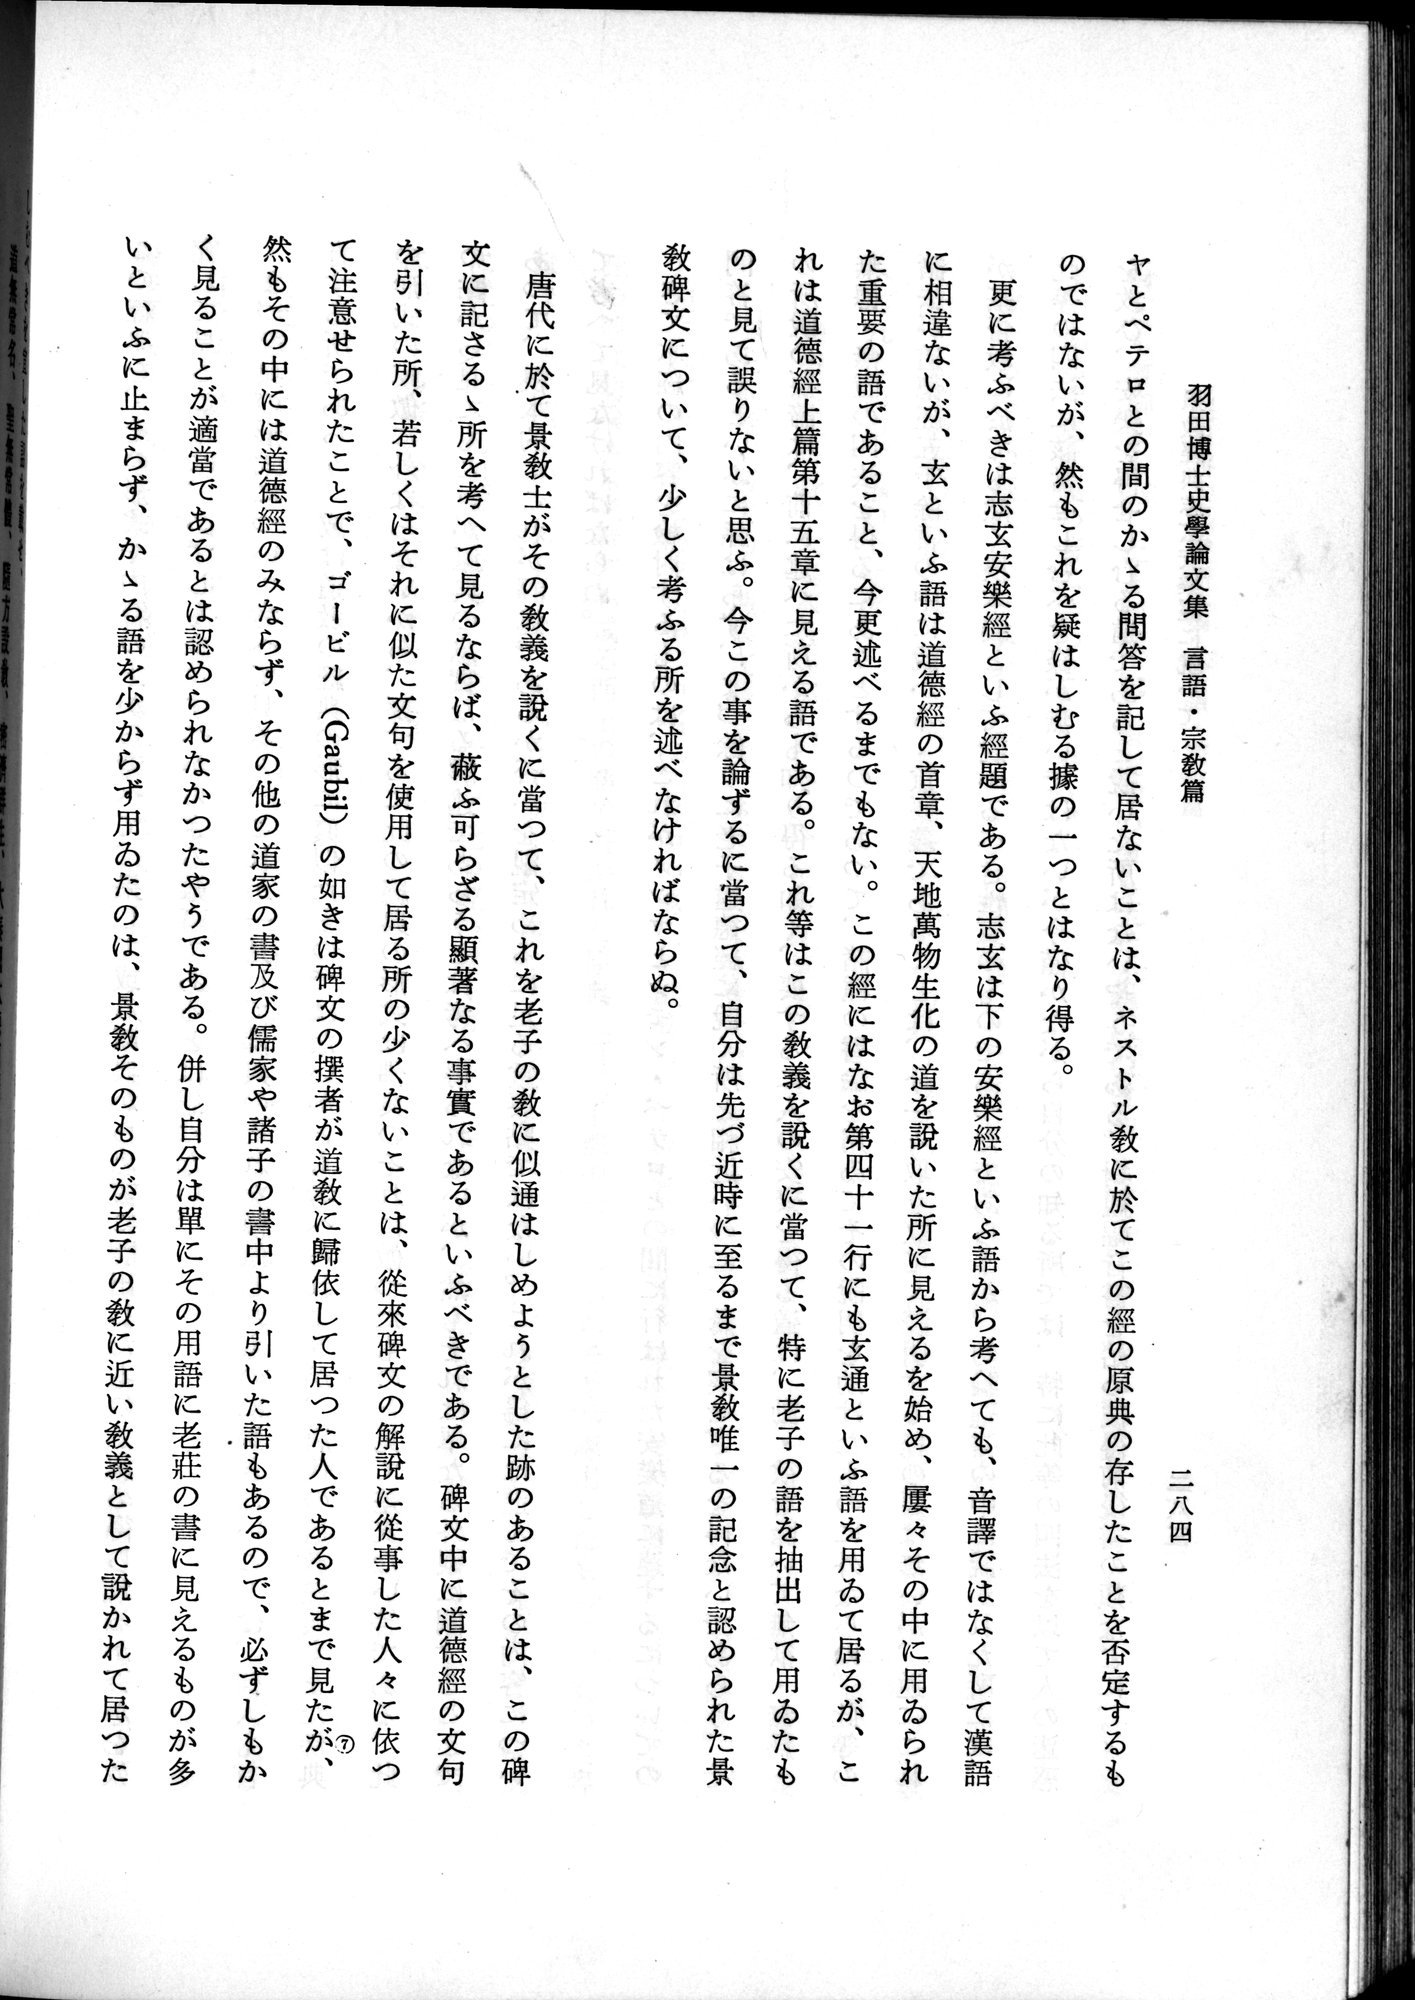 羽田博士史学論文集 : vol.2 / Page 346 (Grayscale High Resolution Image)